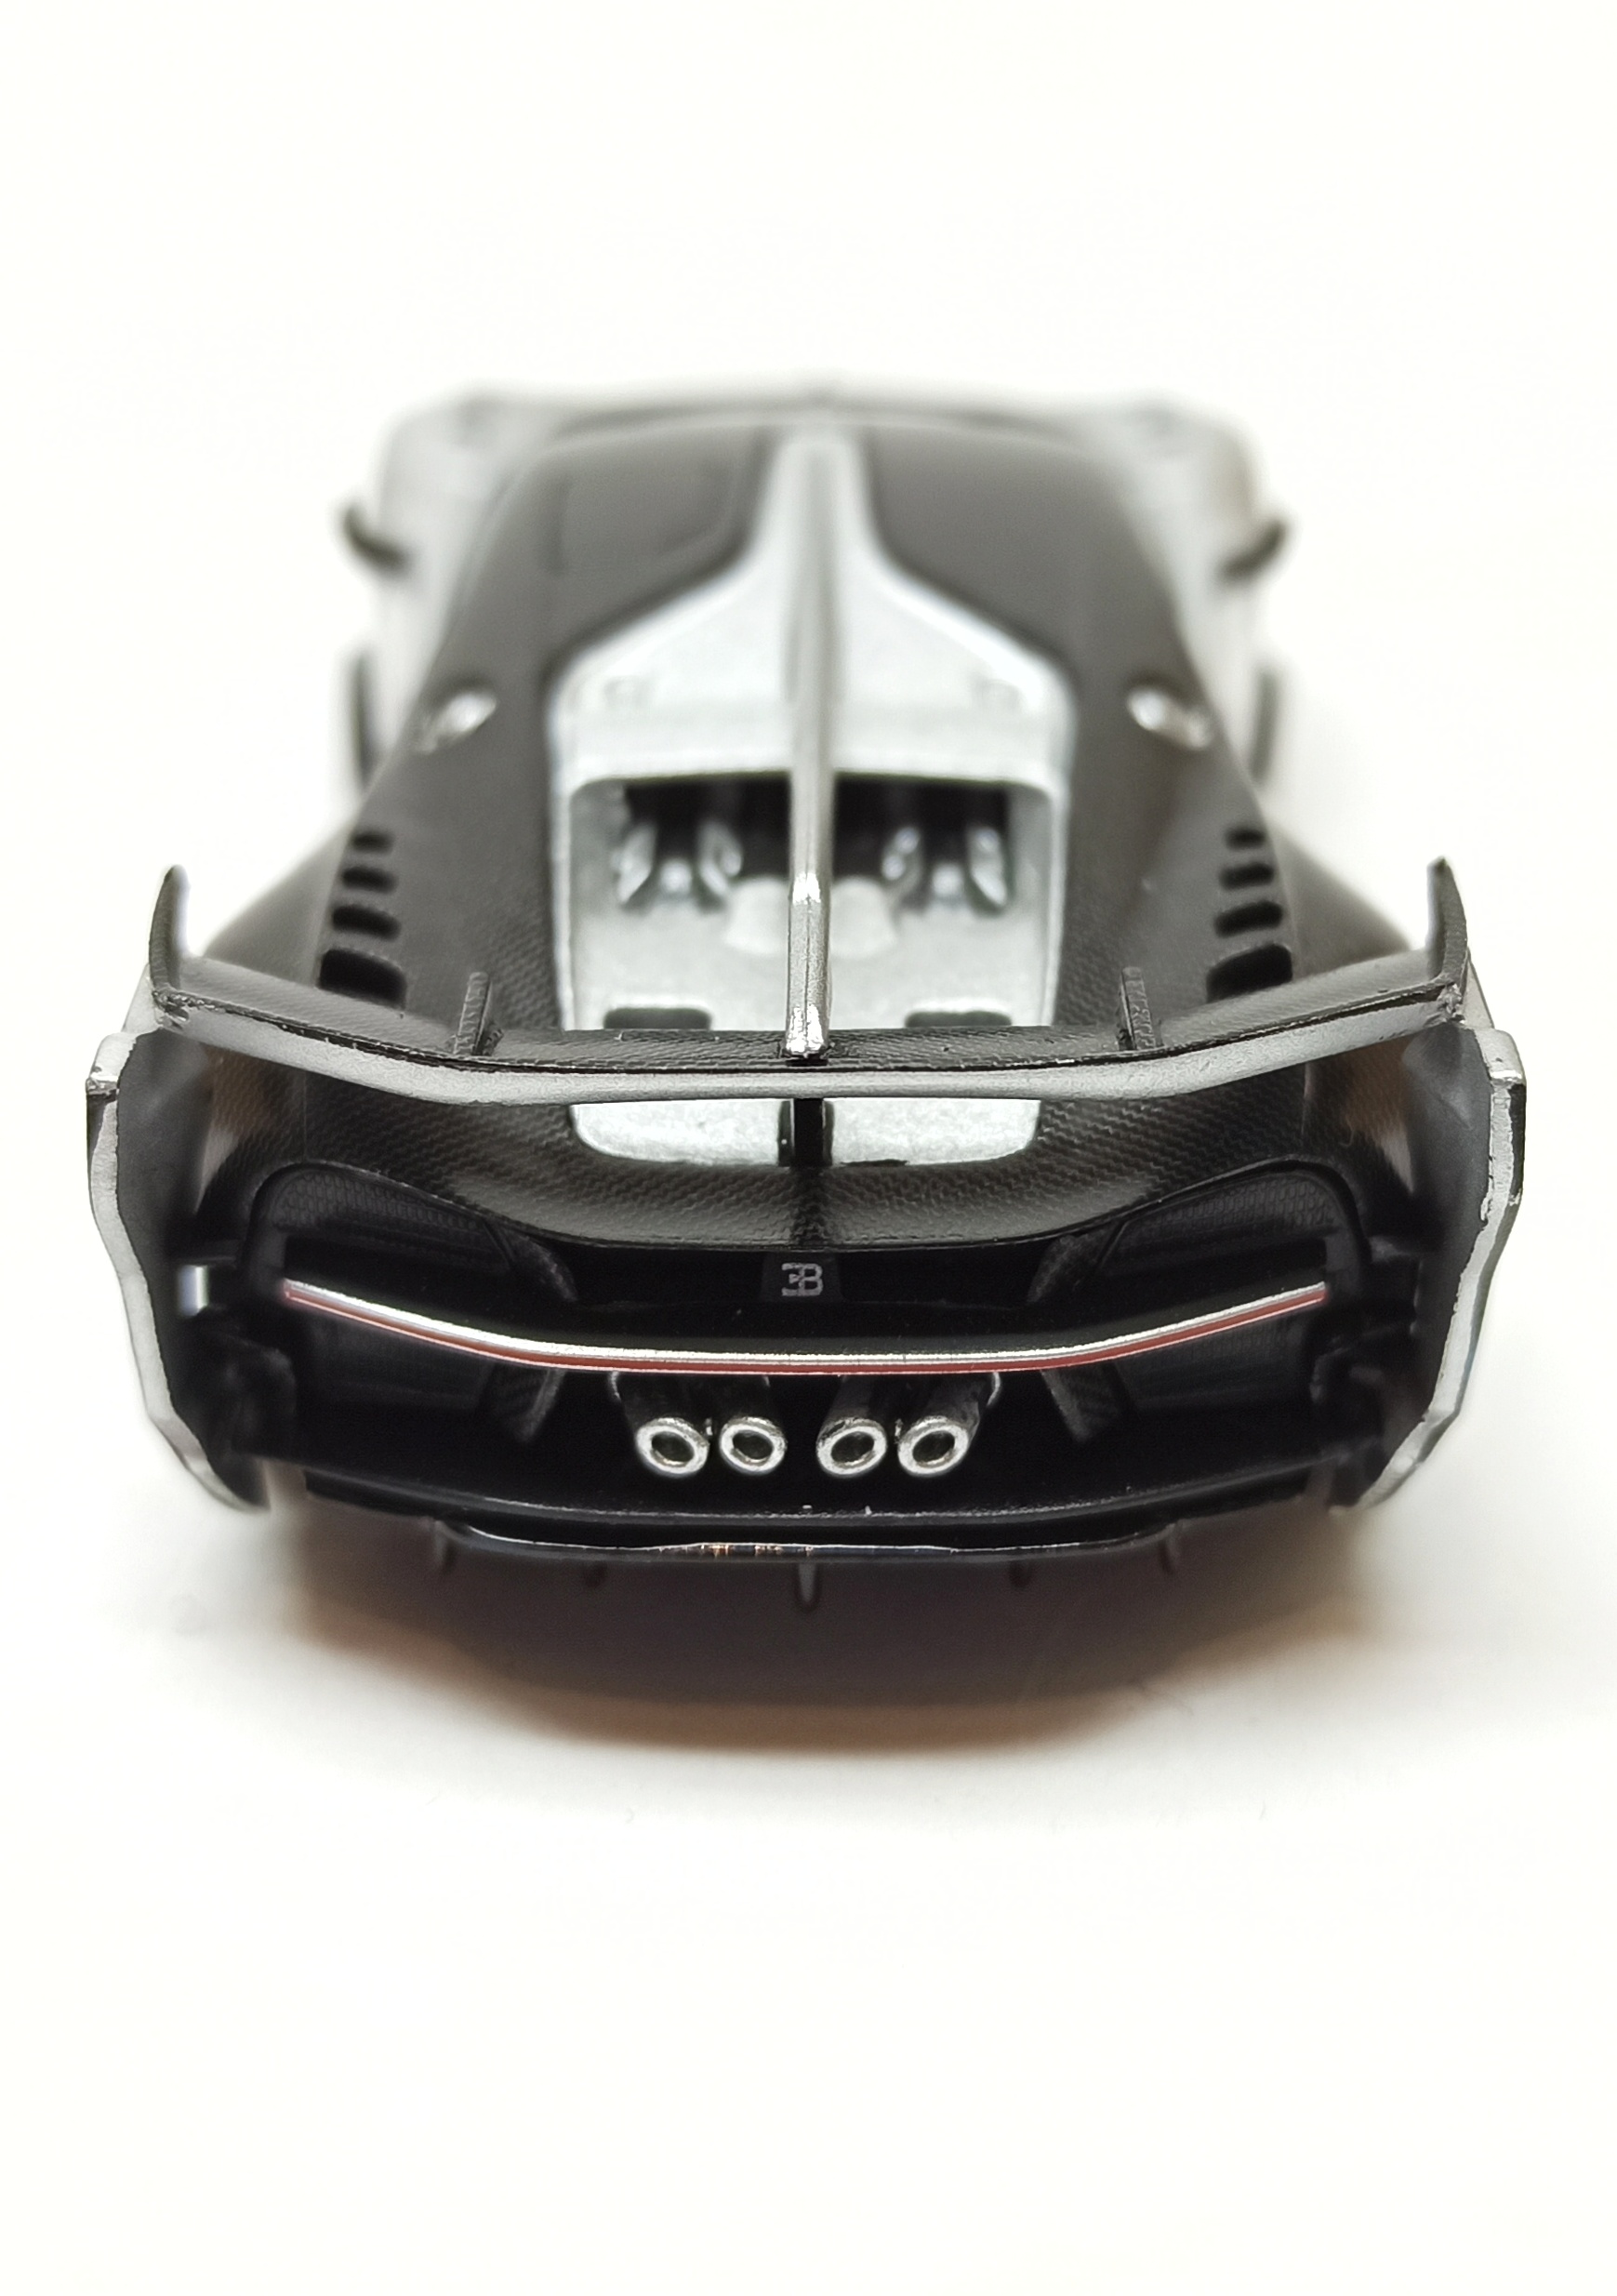 Mini GT Bugatti Vision Gran Turismo (MGT00369) 2022 silver